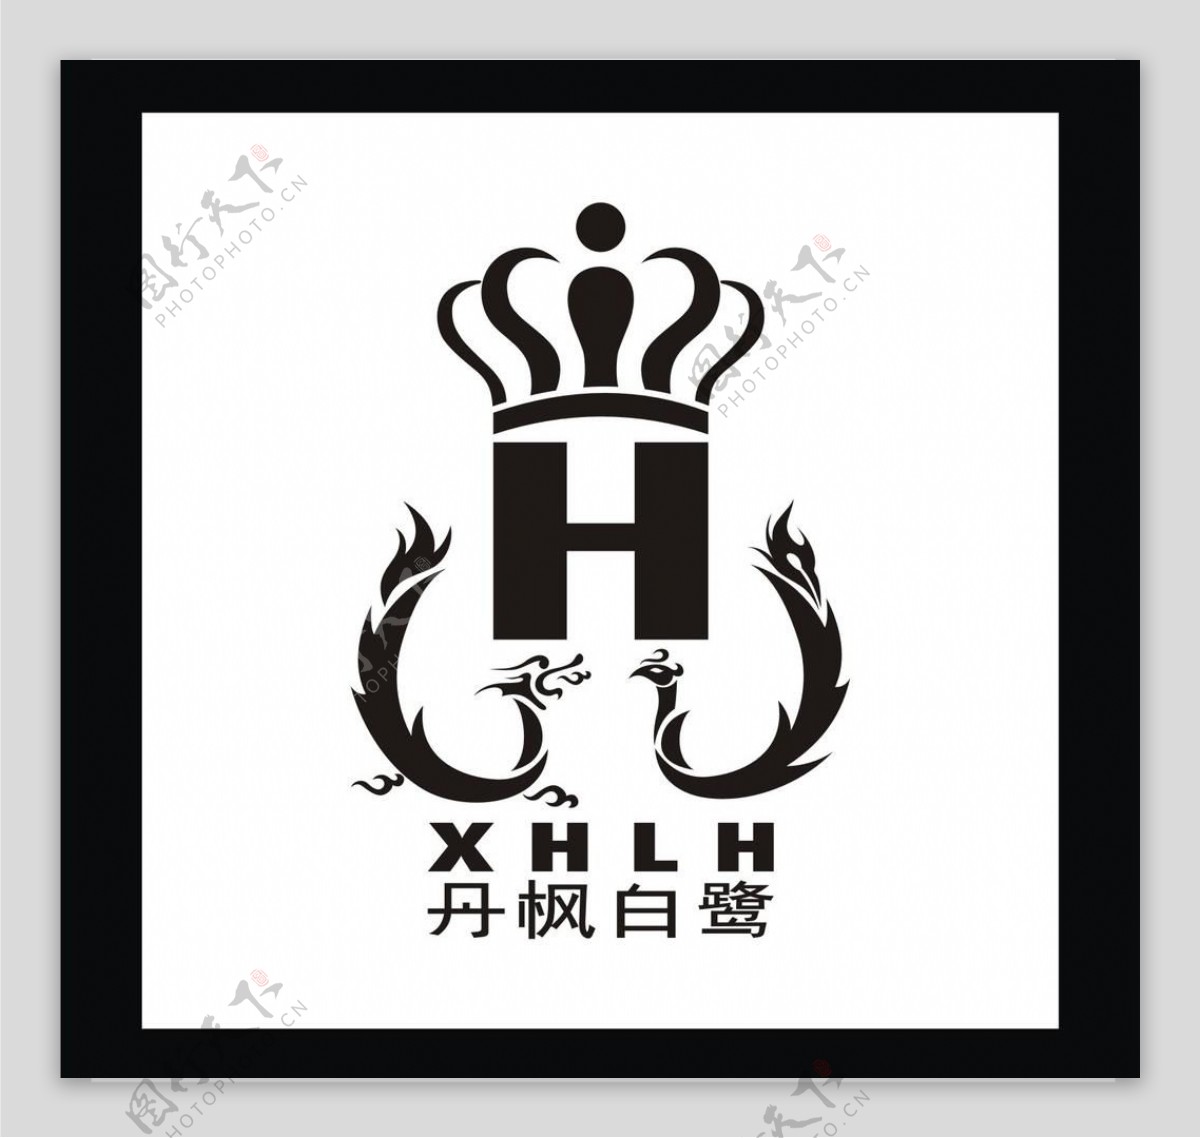 丹枫白鹭logo图片